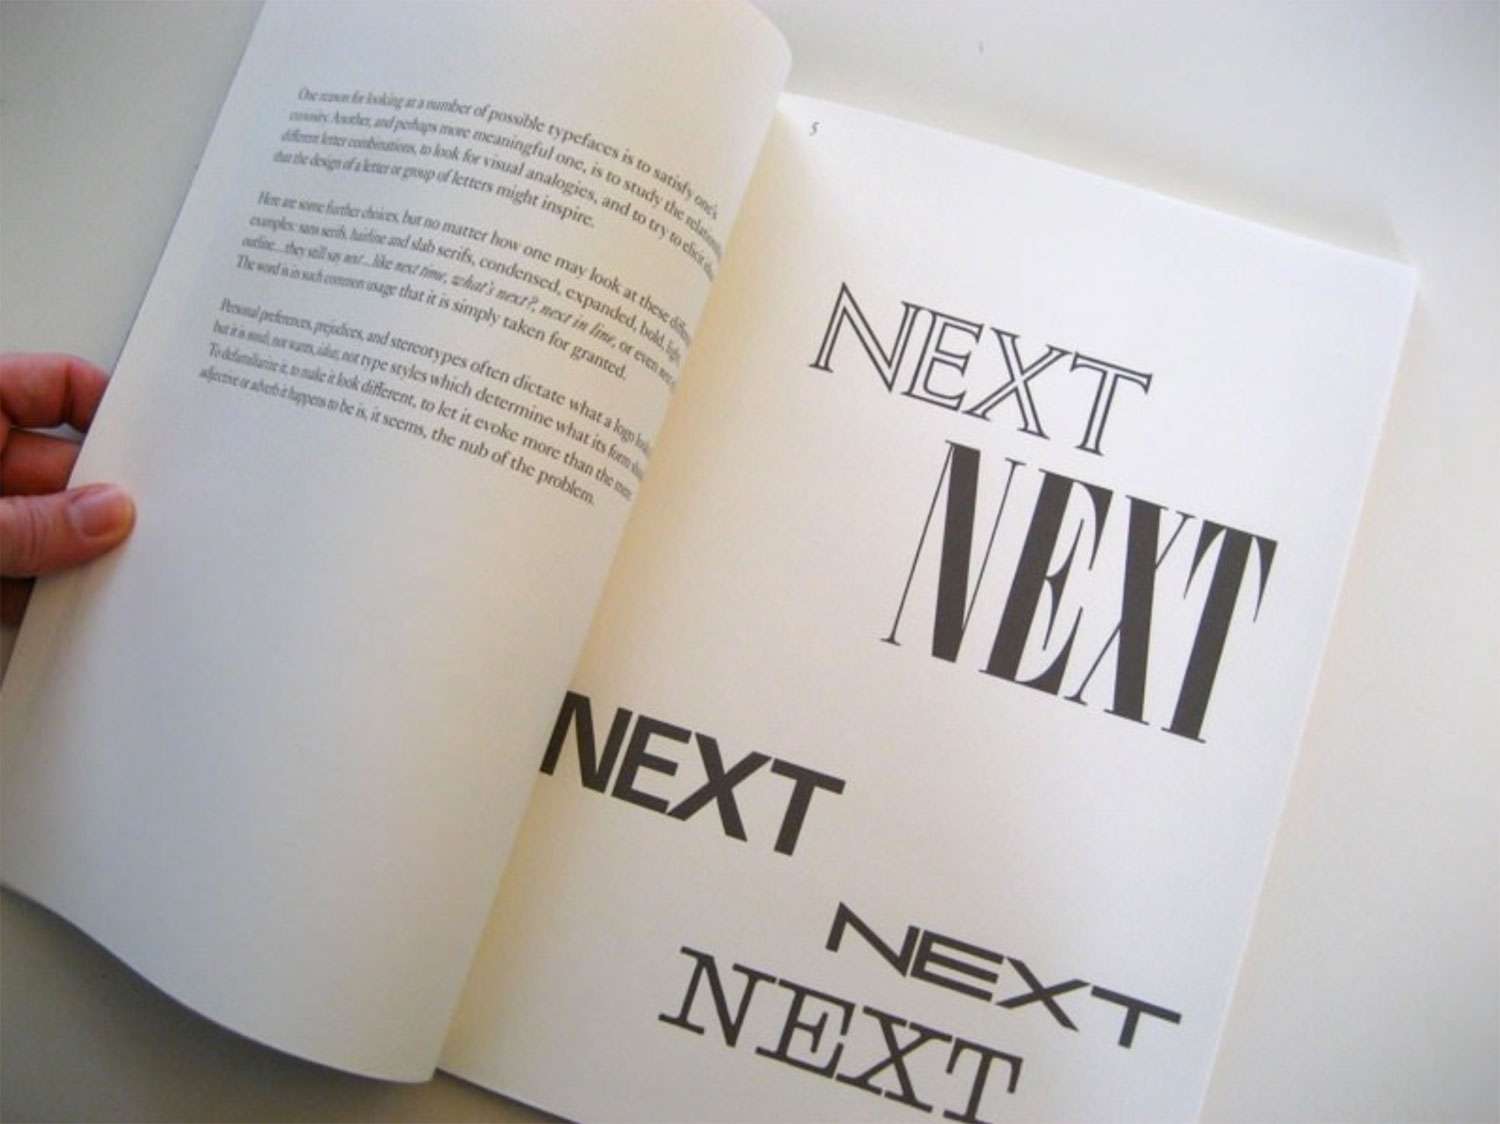 En 1986, Steve Jobs a payé 100 000 dollars à Paul Rand pour créer une identité visuelle pour son entreprise informatique. Rand a développé un livre de proposition unique de 100 pages pour le logo NeXT qui a guidé le lecteur étape par étape à travers le processus conceptuel jusqu'au résultat final.